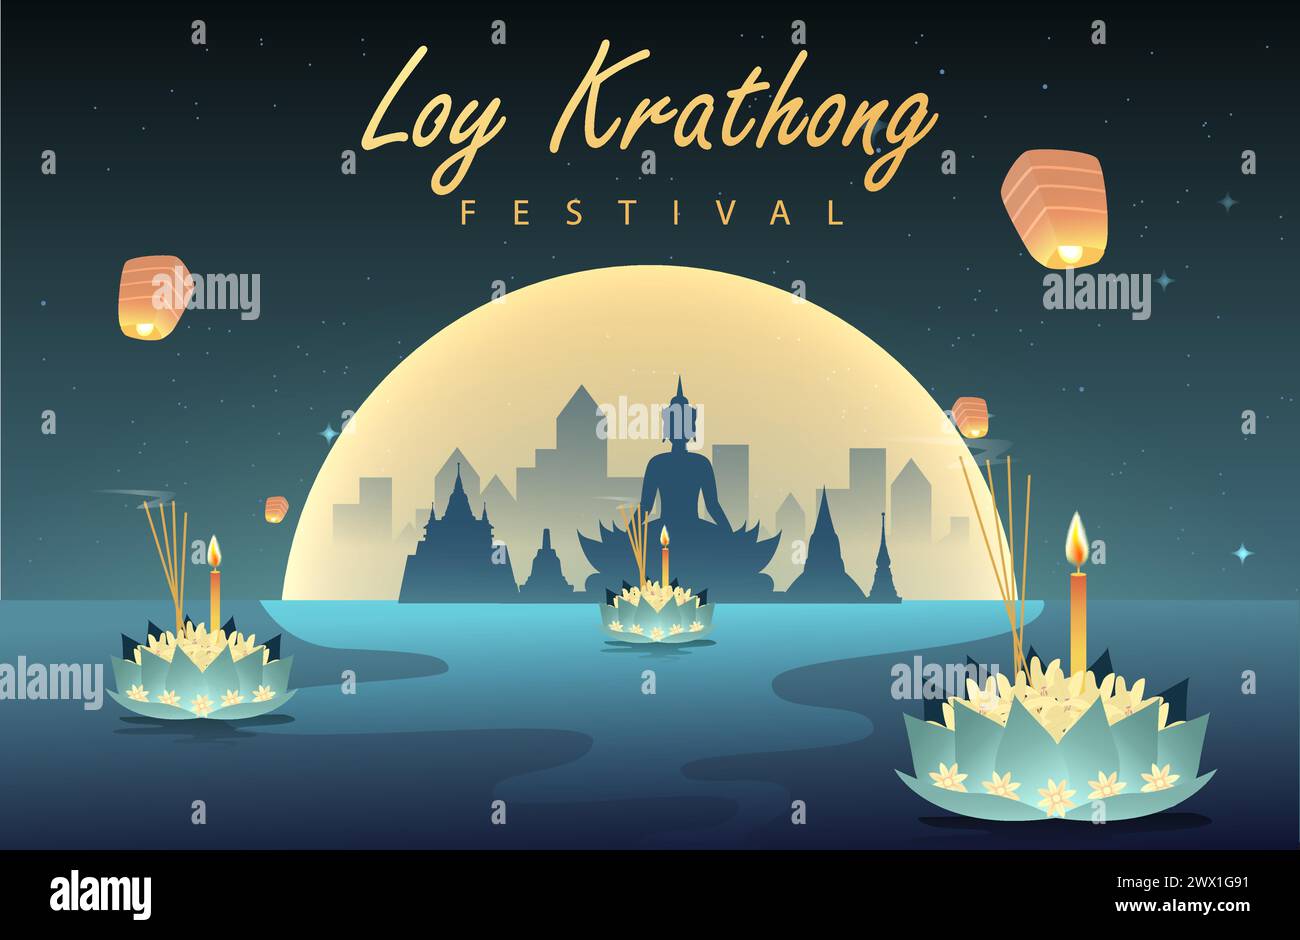 Loy krathong Festival Travel Thailand Poster Design illustration vectorielle de fond. Chao Phraya River Holy place en Thaïlande contexte. Illustration de Vecteur